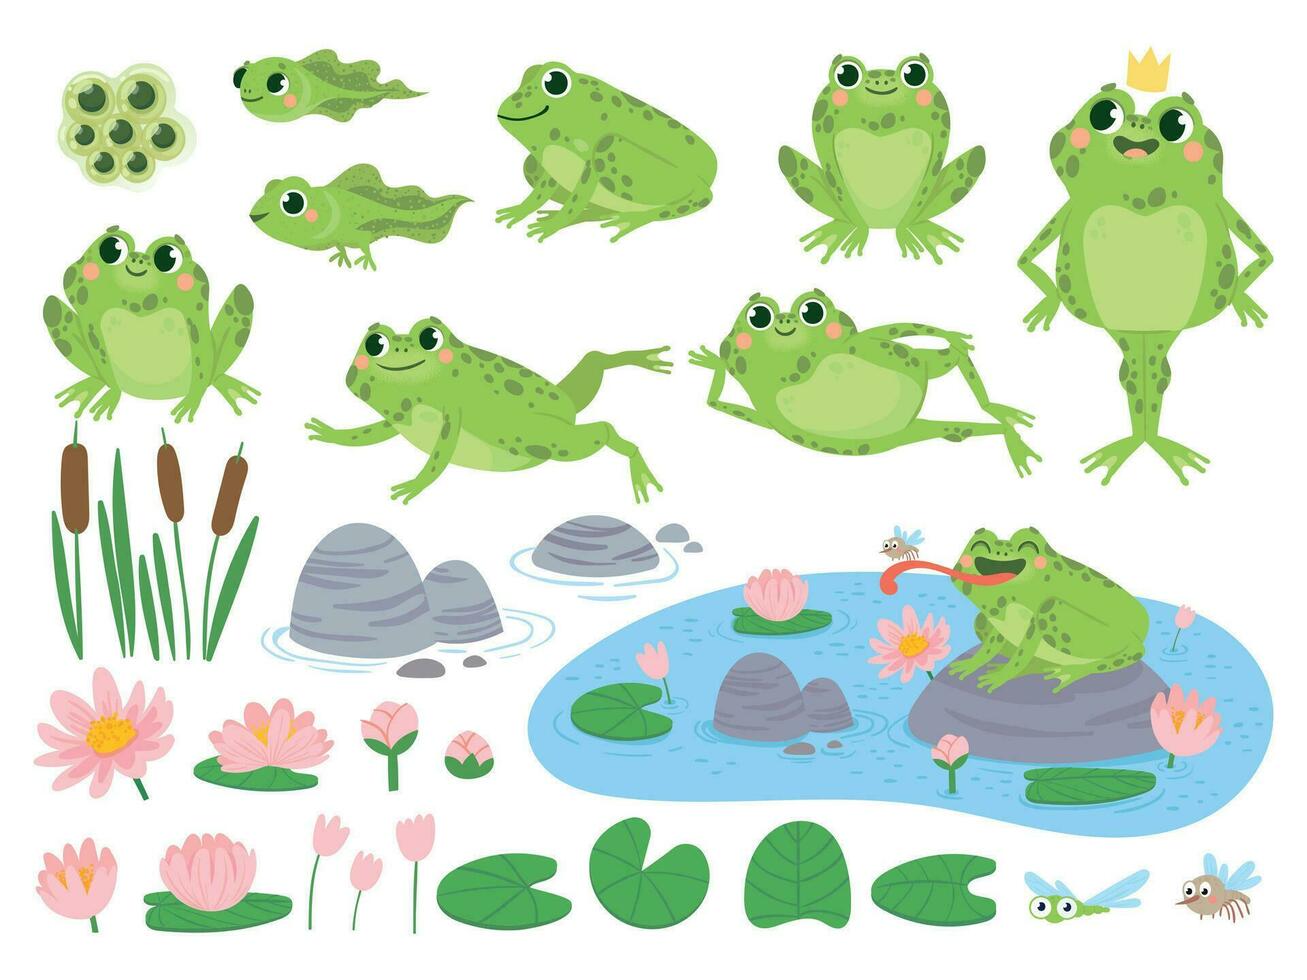 dibujos animados ranas verde linda rana, huevo masas, renacuajo y ranita acuático plantas agua lirio hoja, sapos salvaje naturaleza vida vector conjunto